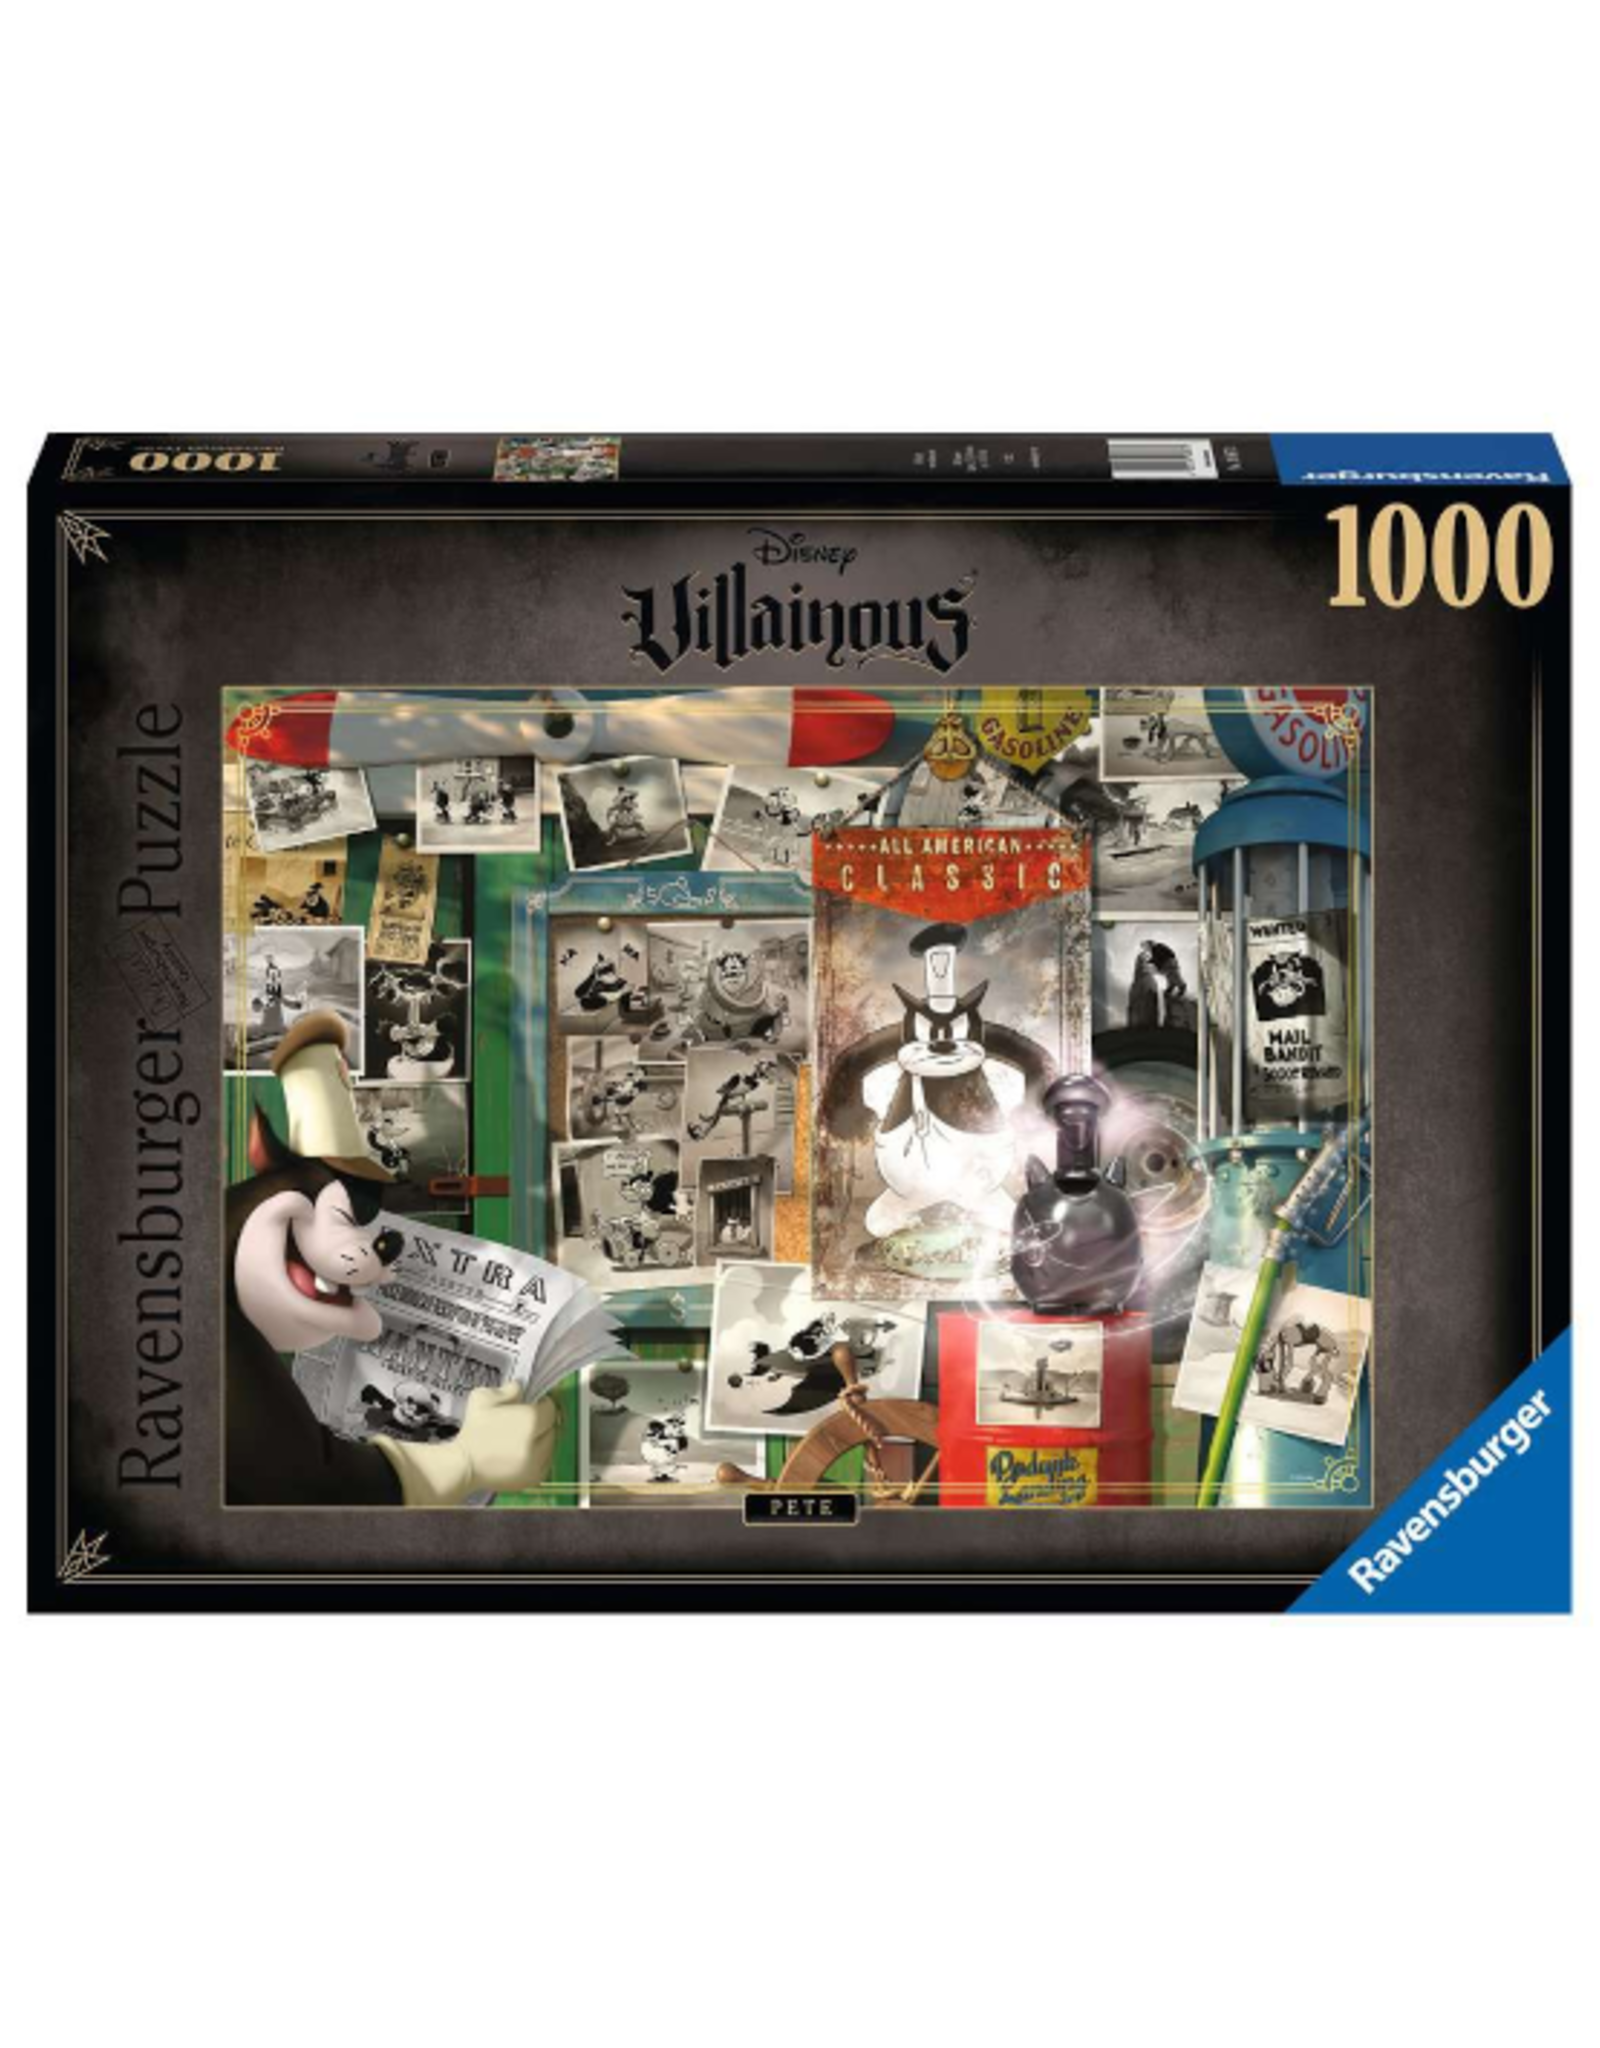 Ravensburger Ravensburger - 1000pcs - Villainous: Pete